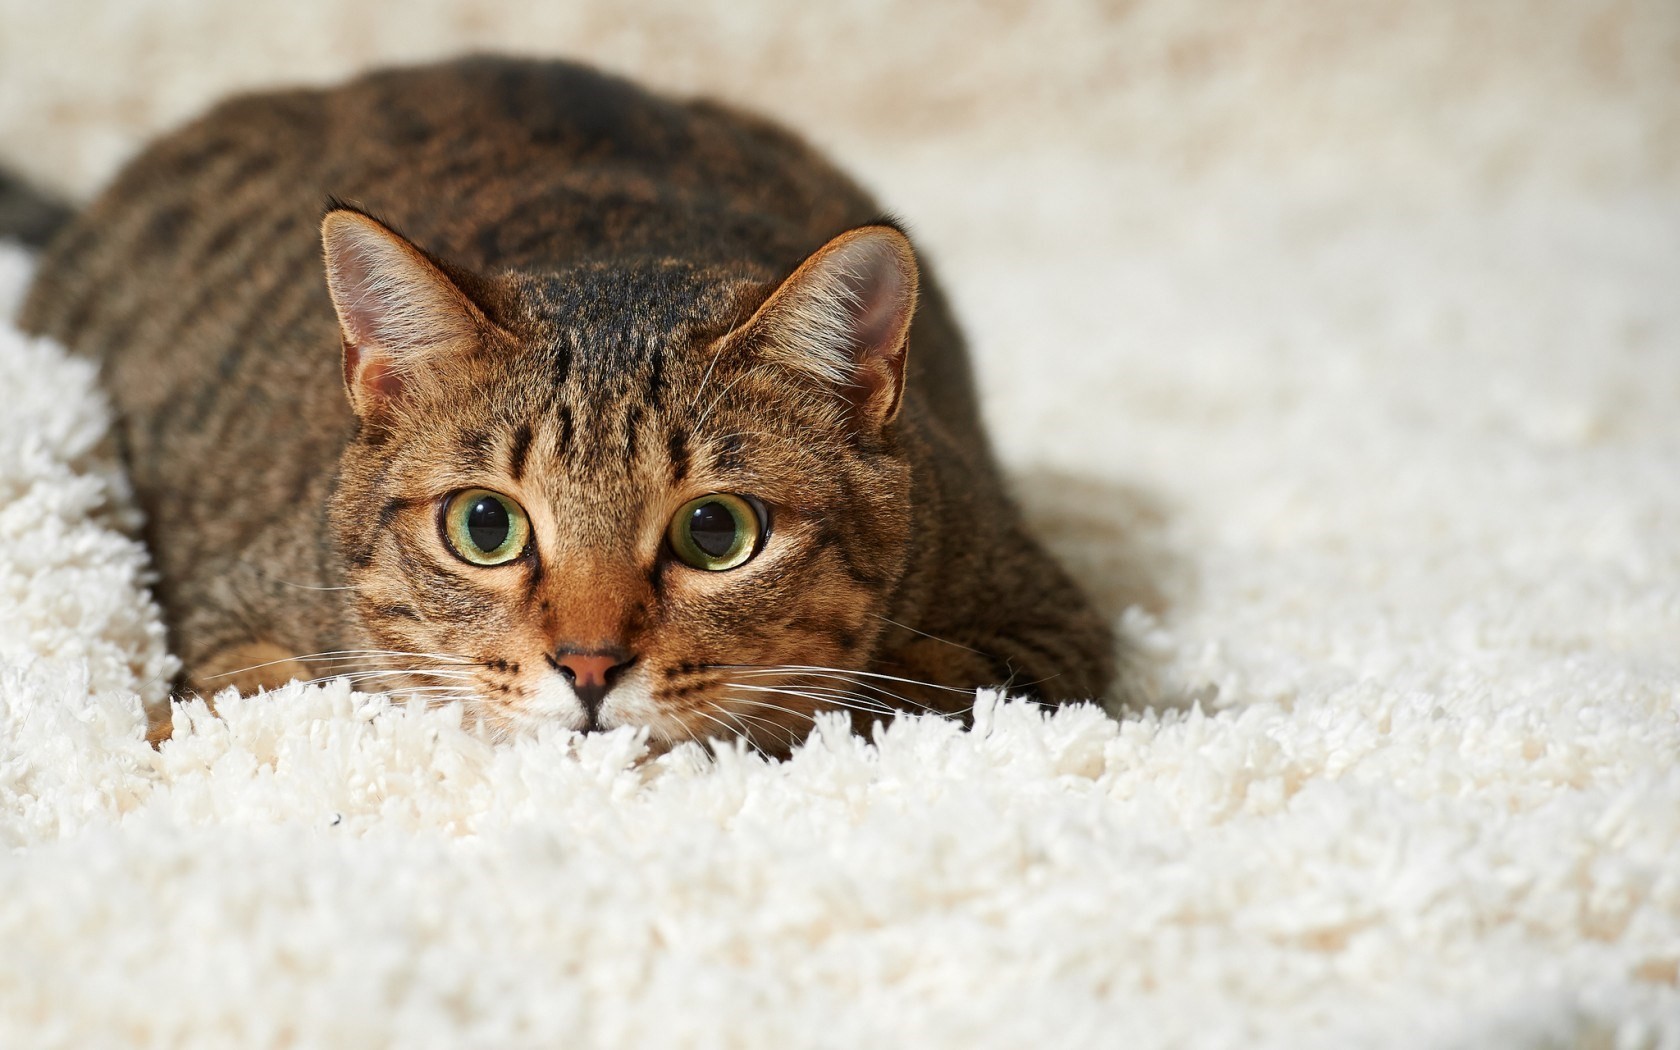 General 1680x1050 animals carpet cats indoors mammals